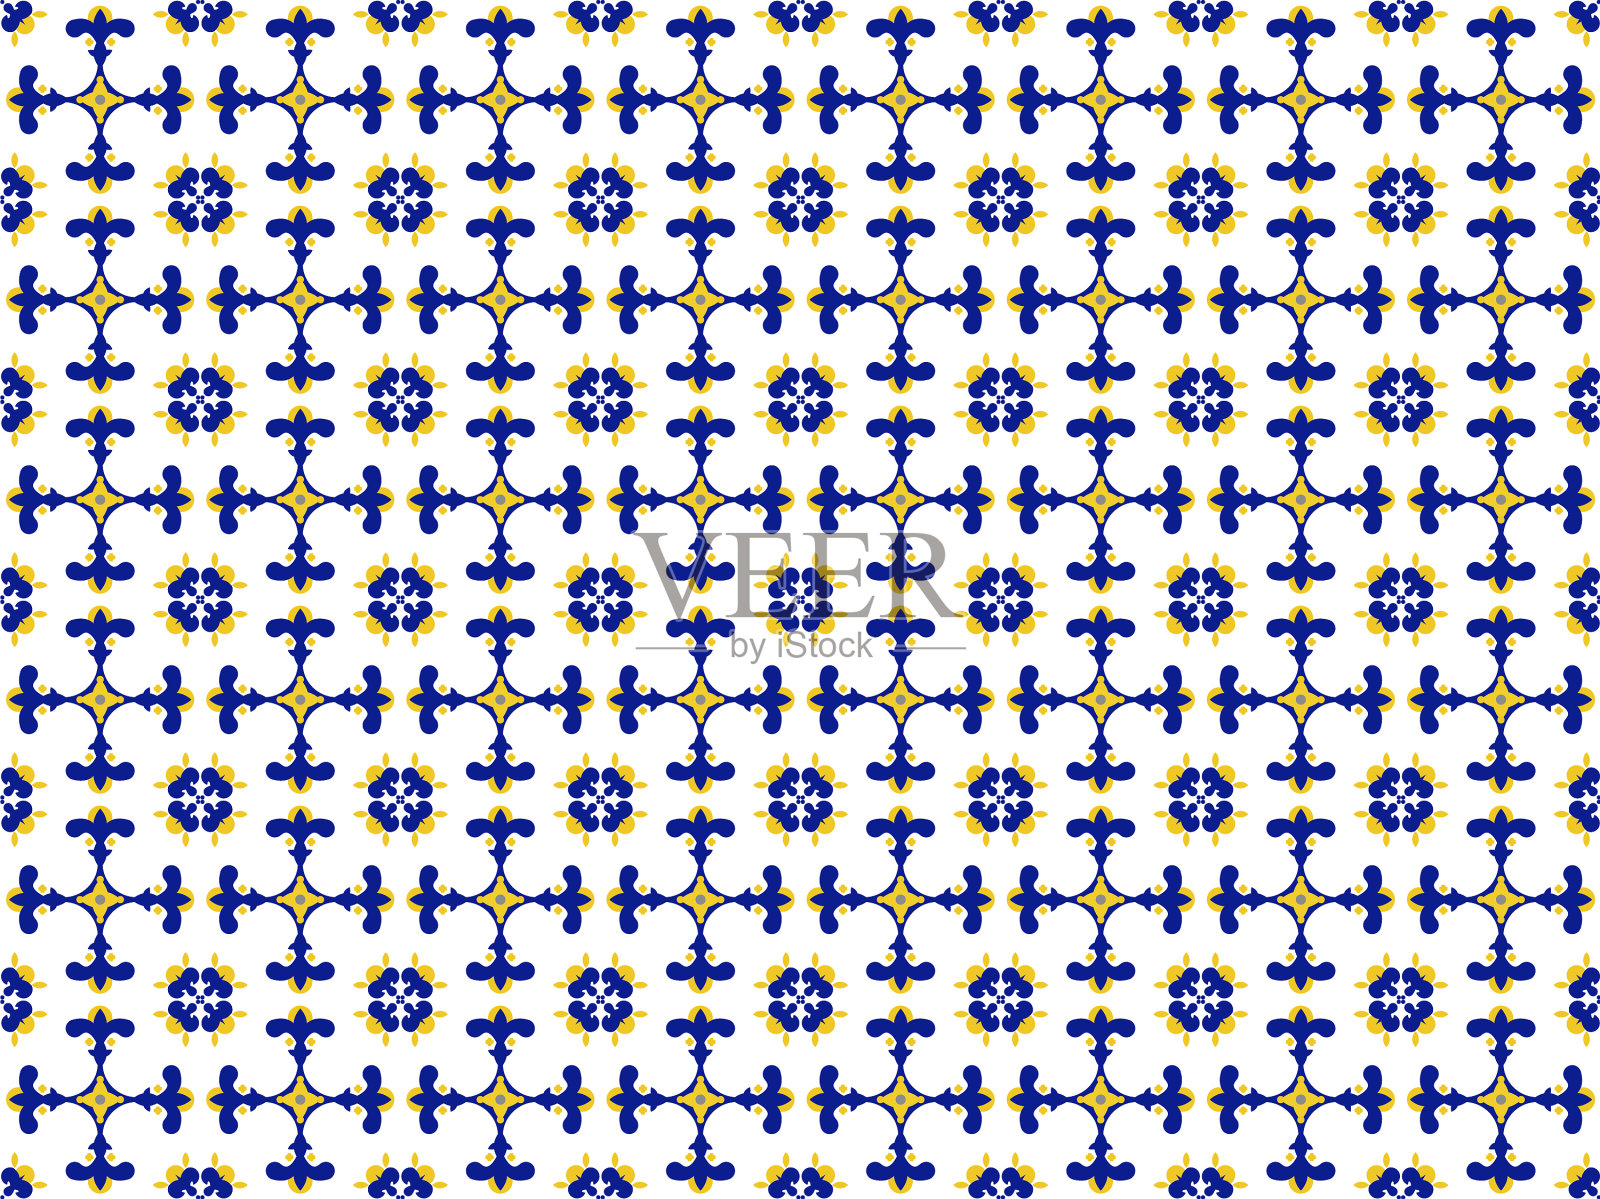 Azulejos葡萄牙瓷砖地板图案插画图片素材